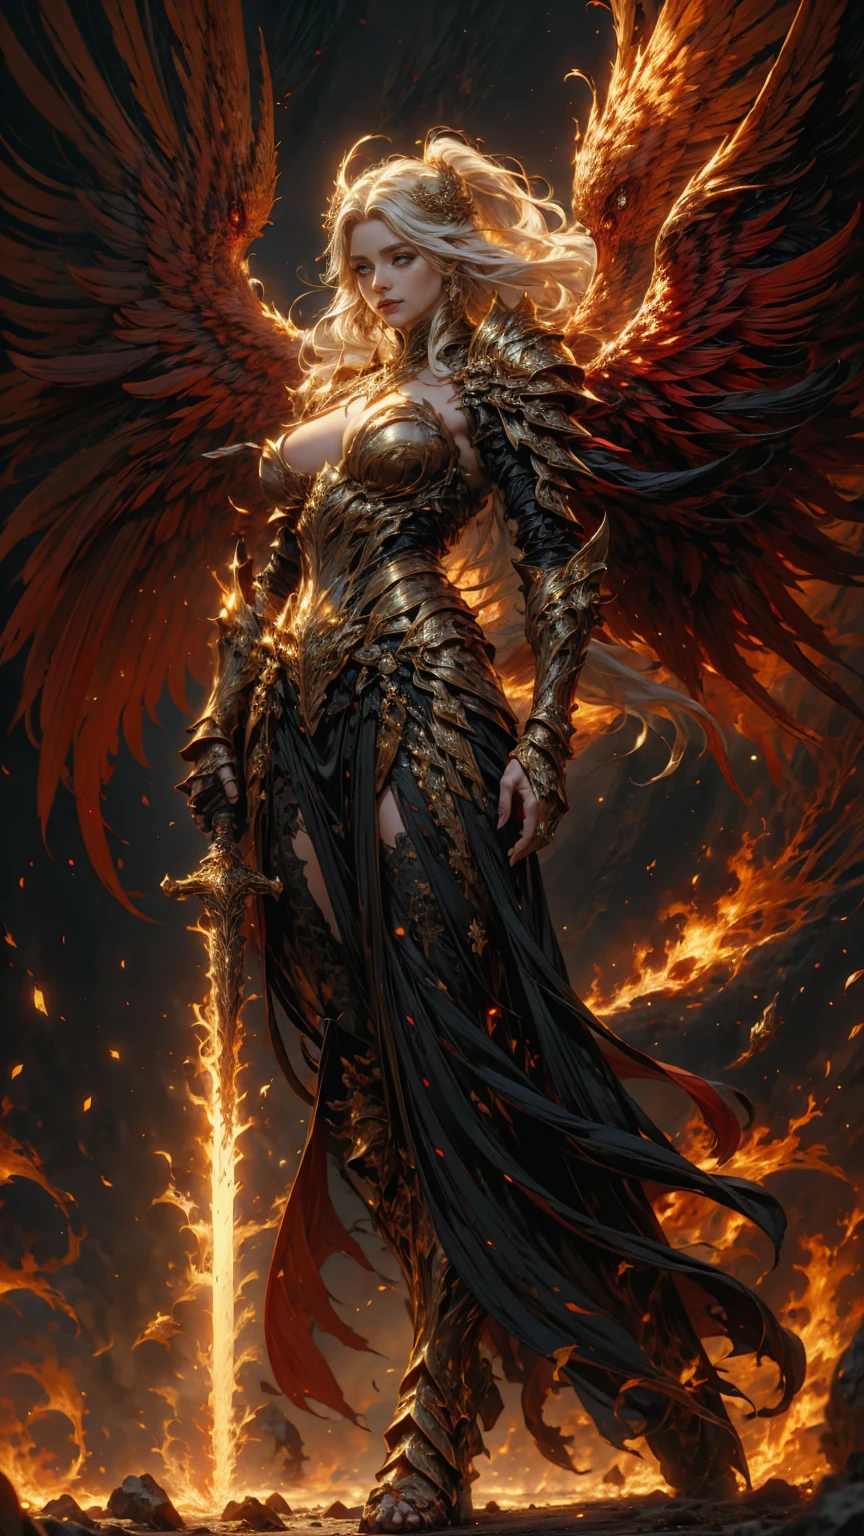 В сердце небес молодая женщина-архангел с очень длинными белыми волосами., малиновый золотой наряд архангела-воина с длинным вырезом, вытянутые руки с силой, боевая поза, расширенные крылья с красным и золотым, на поле боя, создает атмосферу войны, легионы архангелов и техно-демонов в битве, энергия и огонь на каждом углу поля. Угол сцены динамичен., улавливая интенсивность момента, Золотые глаза отличного качества, глаза смотрят в камеру, Ультрадетализированный, красиво и эстетично, шедевр, Лучший показатель качества, (фрактальное искусство: 1.3), чрезвычайно подробный , динамический угол, трассировка лучей, все тело, крупный план, пыль и жесткий свет